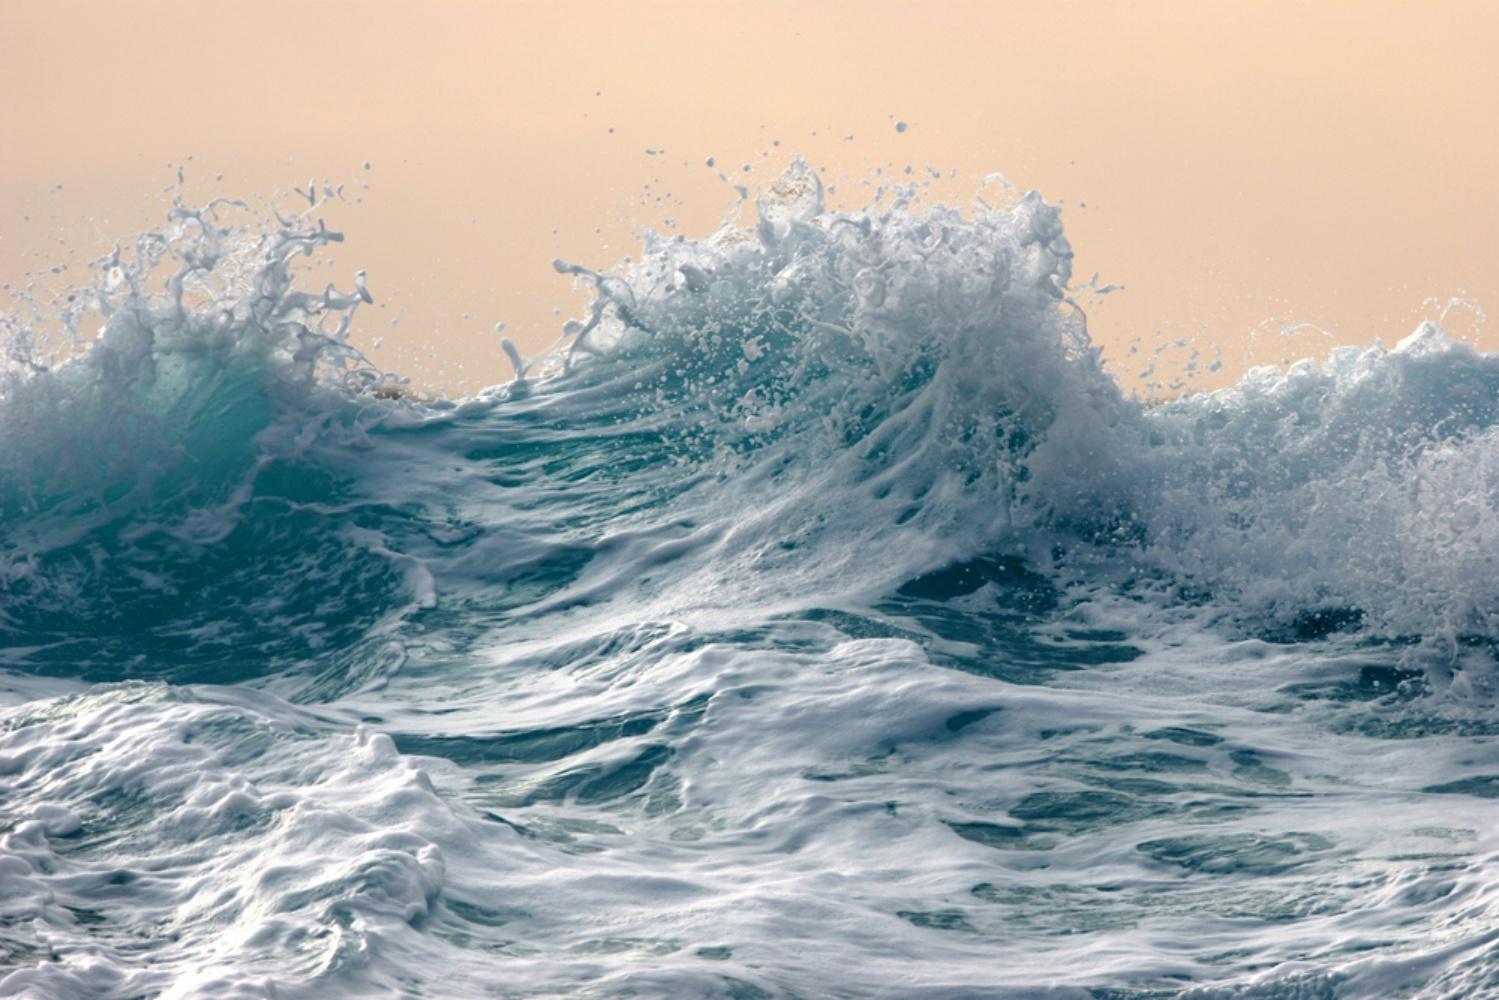 NAMI_088 - Syoin Kajii, Japanische Fotografie, Ozean, Wellen, Wasser, Natur, Kunst